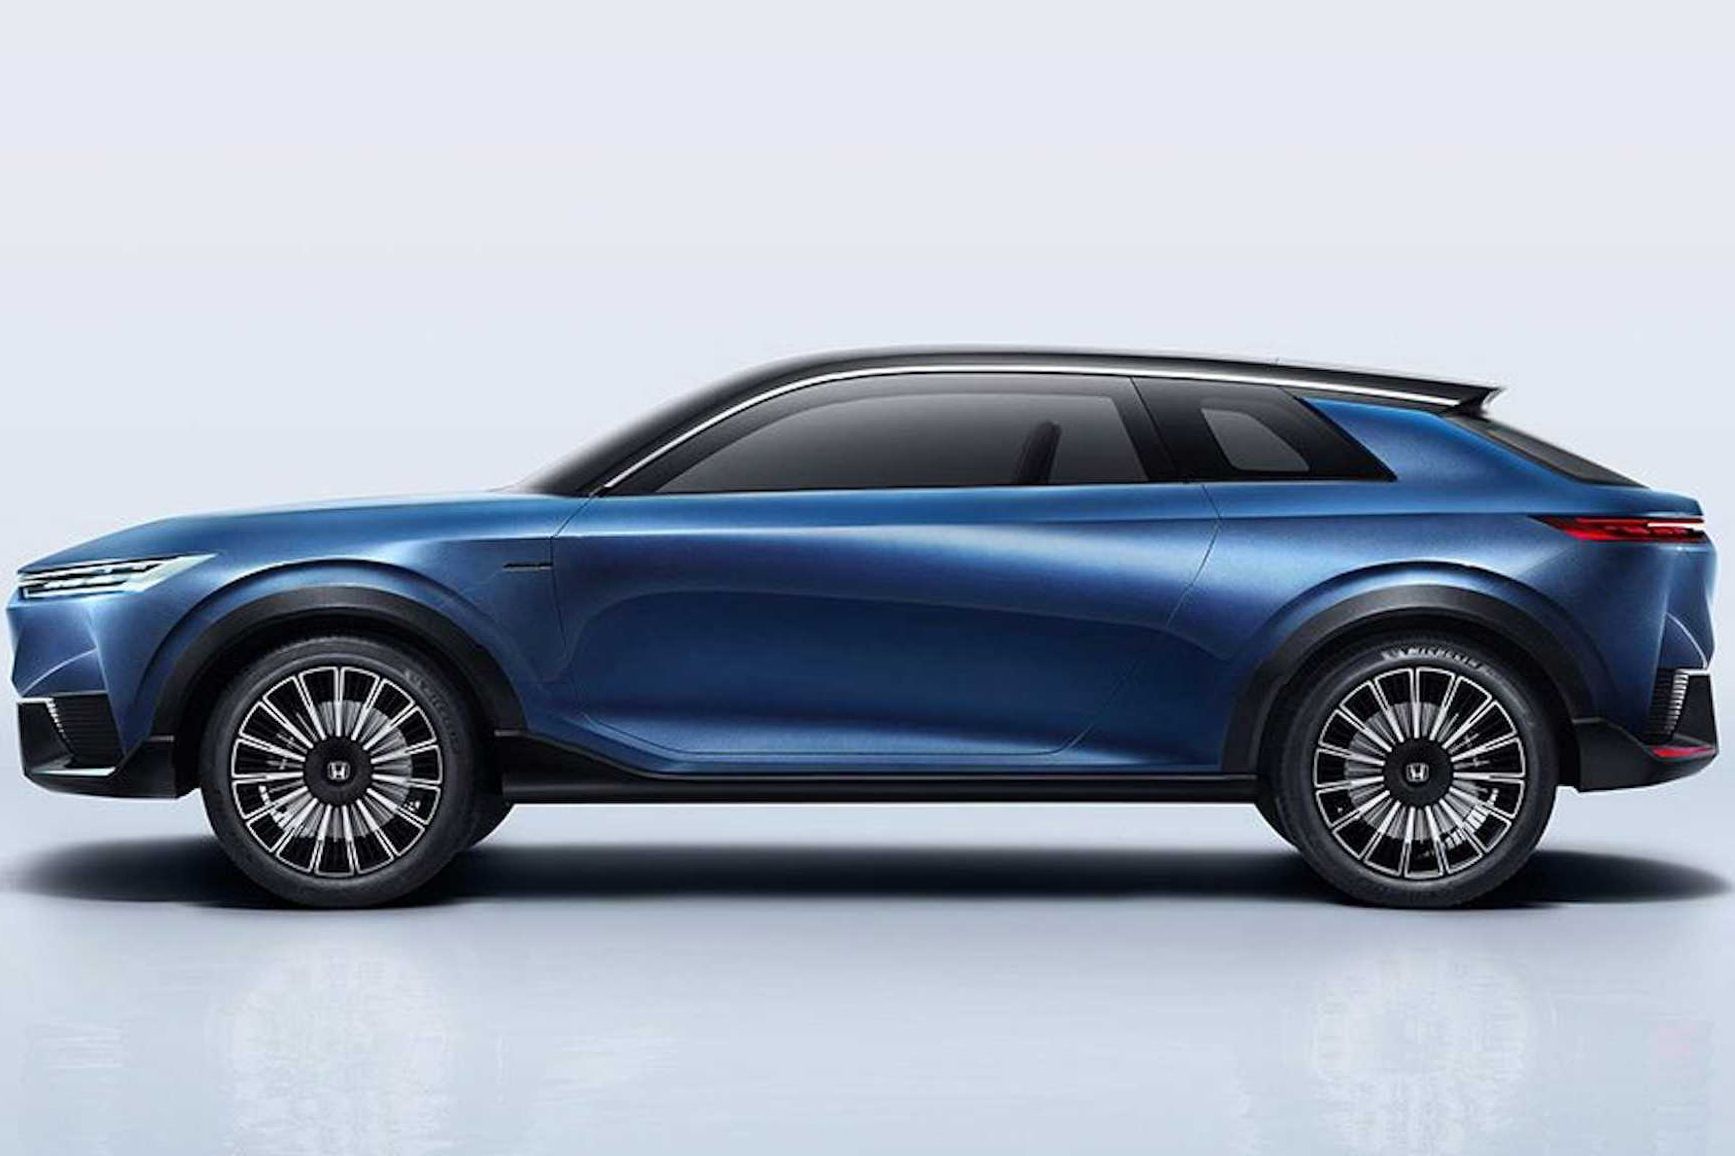 Honda electric SUV concept debuts at Auto China 2020